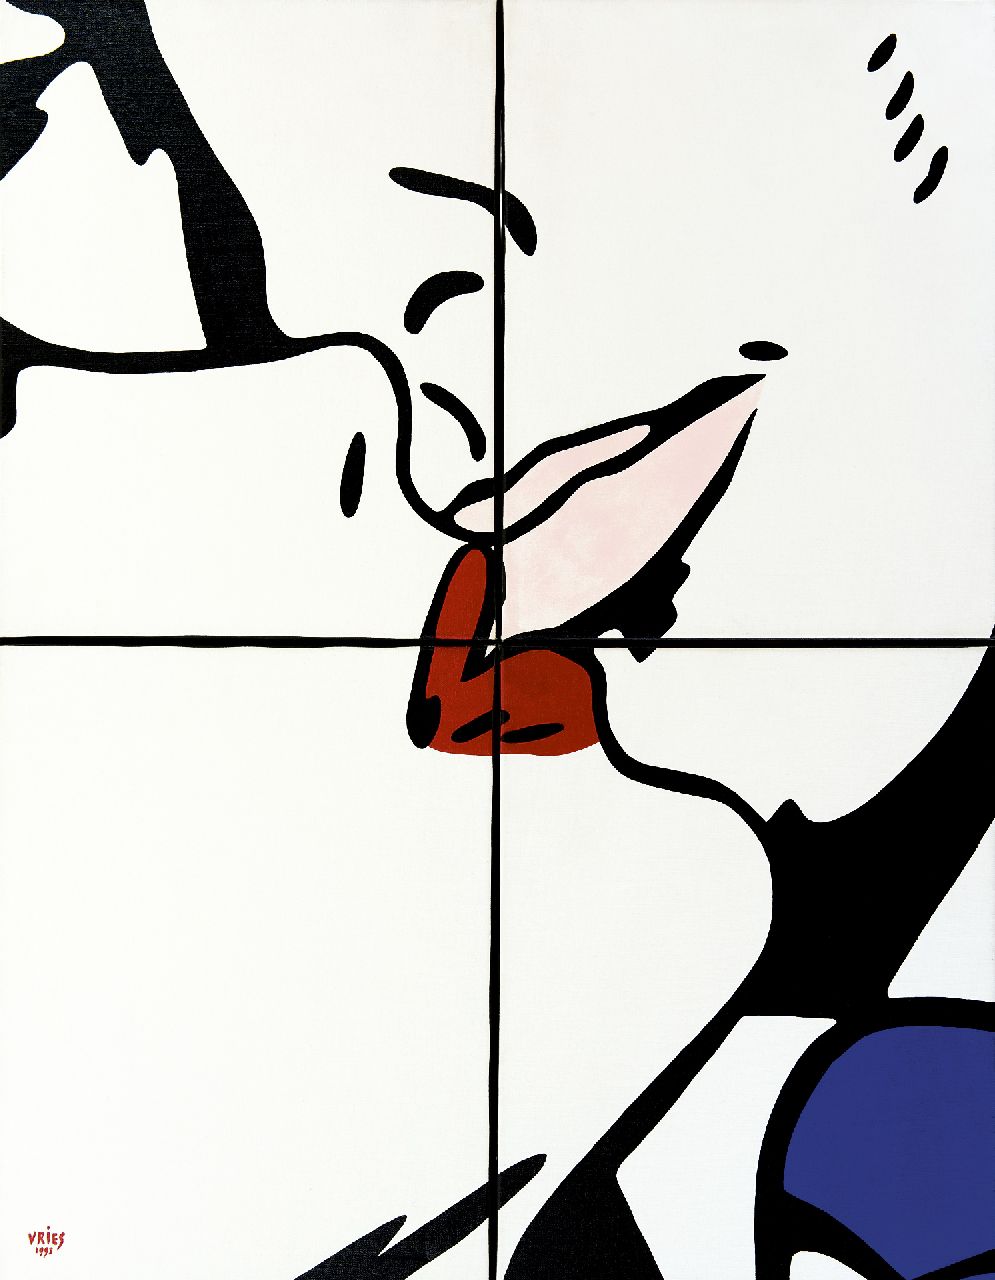 Vries J.L. de | 'Jan' Luitzen de Vries, Puzzle I, acryl op doek 90,8 x 70,4 cm, gesigneerd linksonder en gedateerd 1993